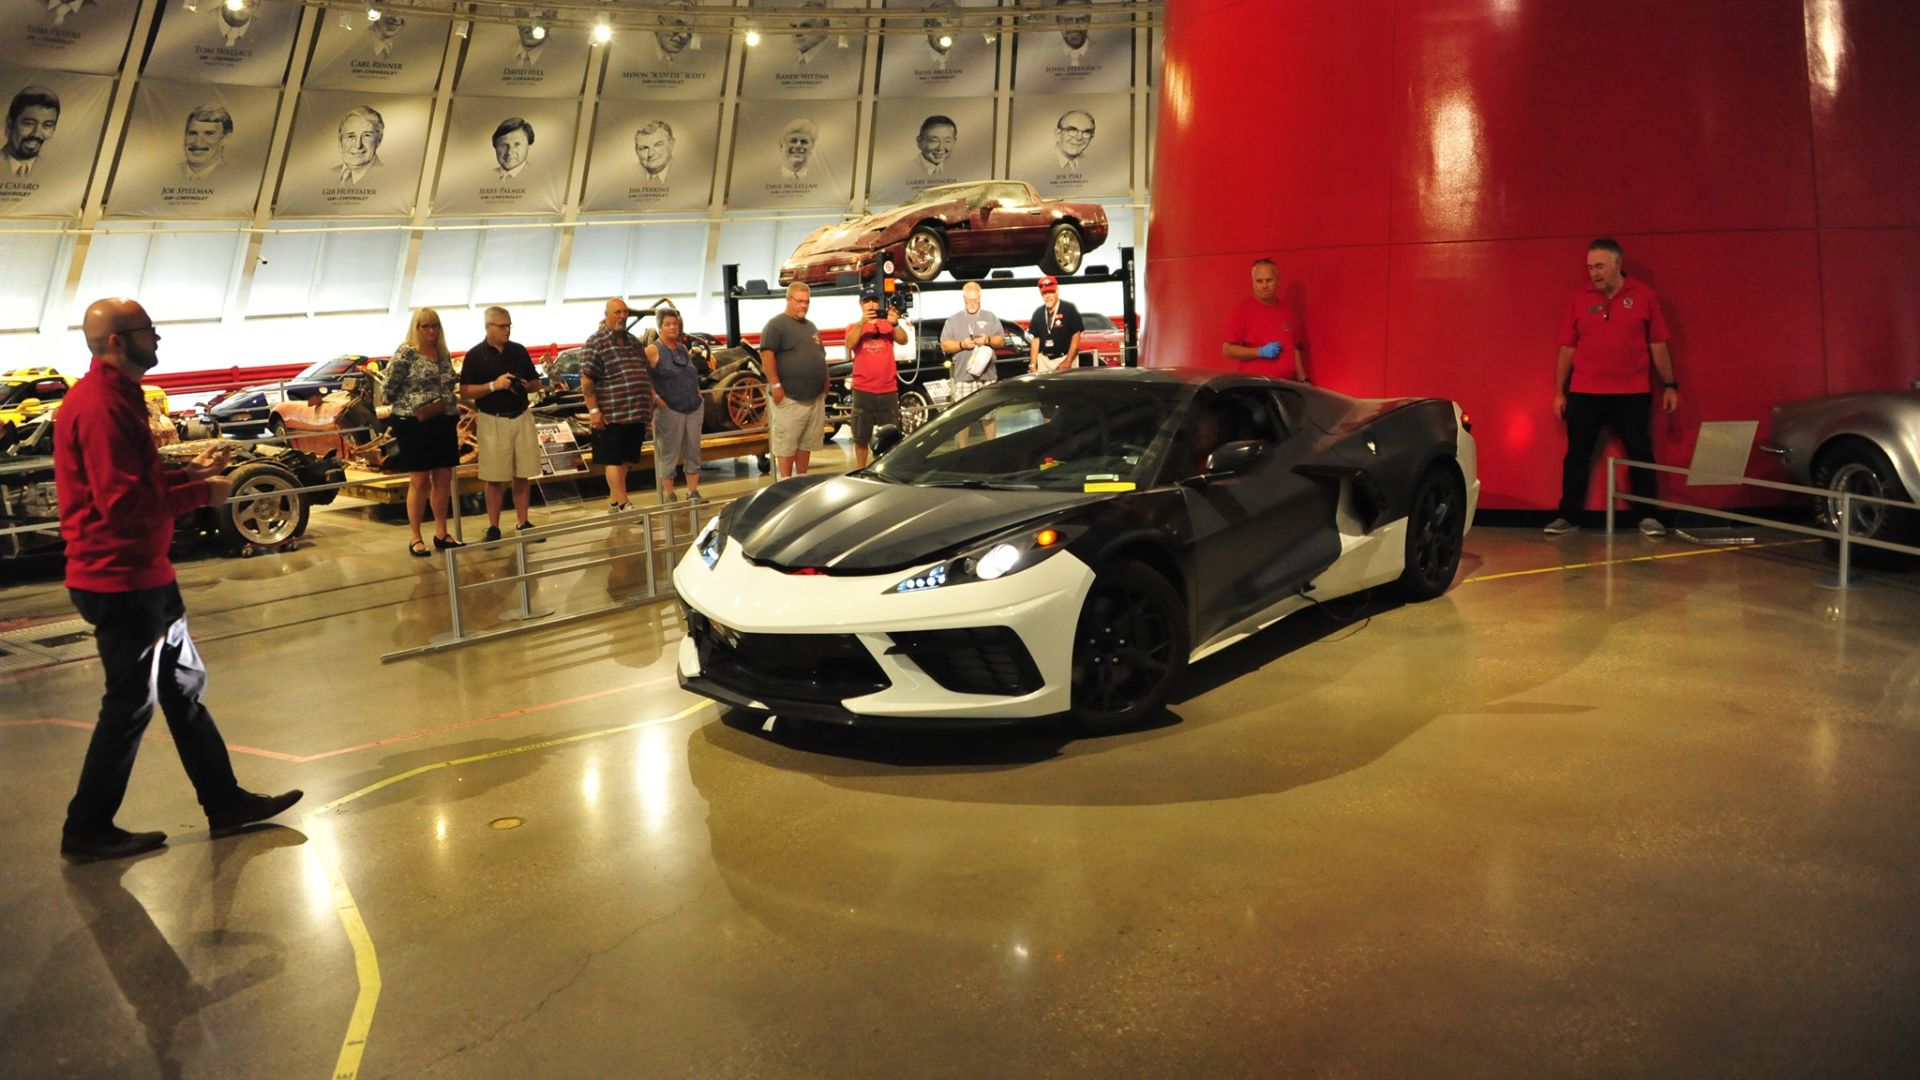 New C8 Corvette at the Corvette Museum